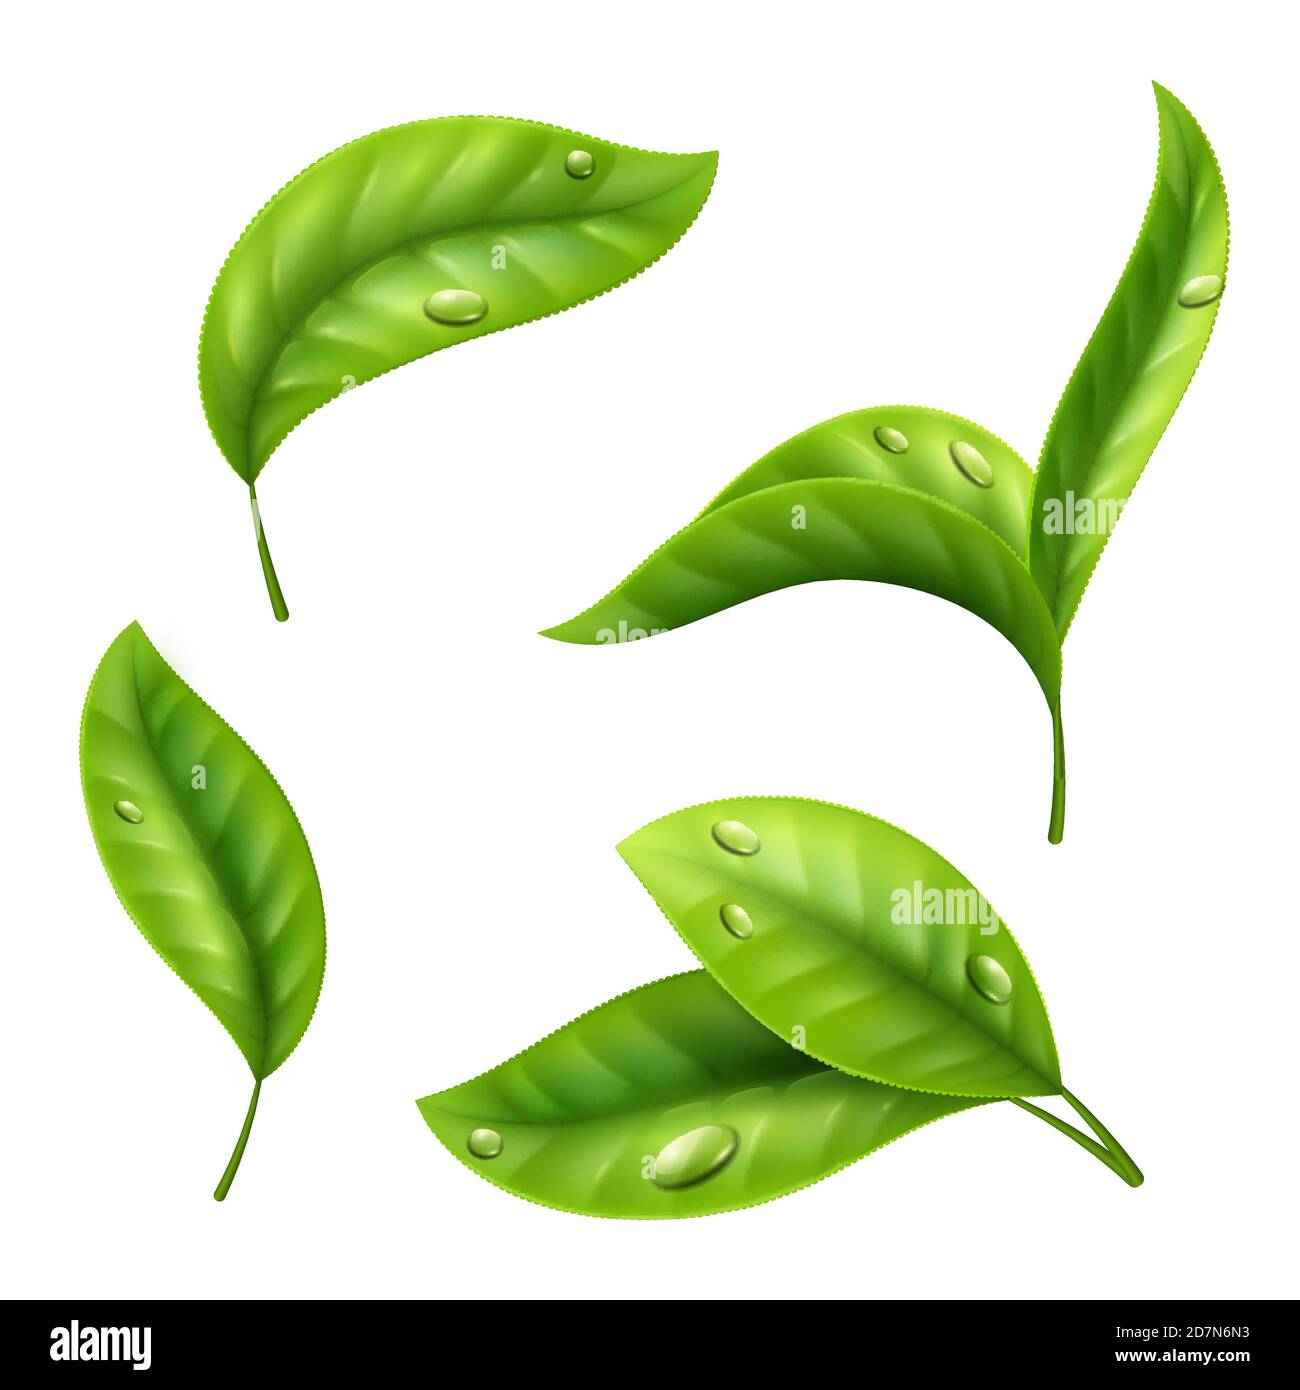 Hojas de té verde realista con gotas aisladas sobre fondo blanco. Ilustración de la hoja verde del té, planta orgánica fresca Ilustración del Vector